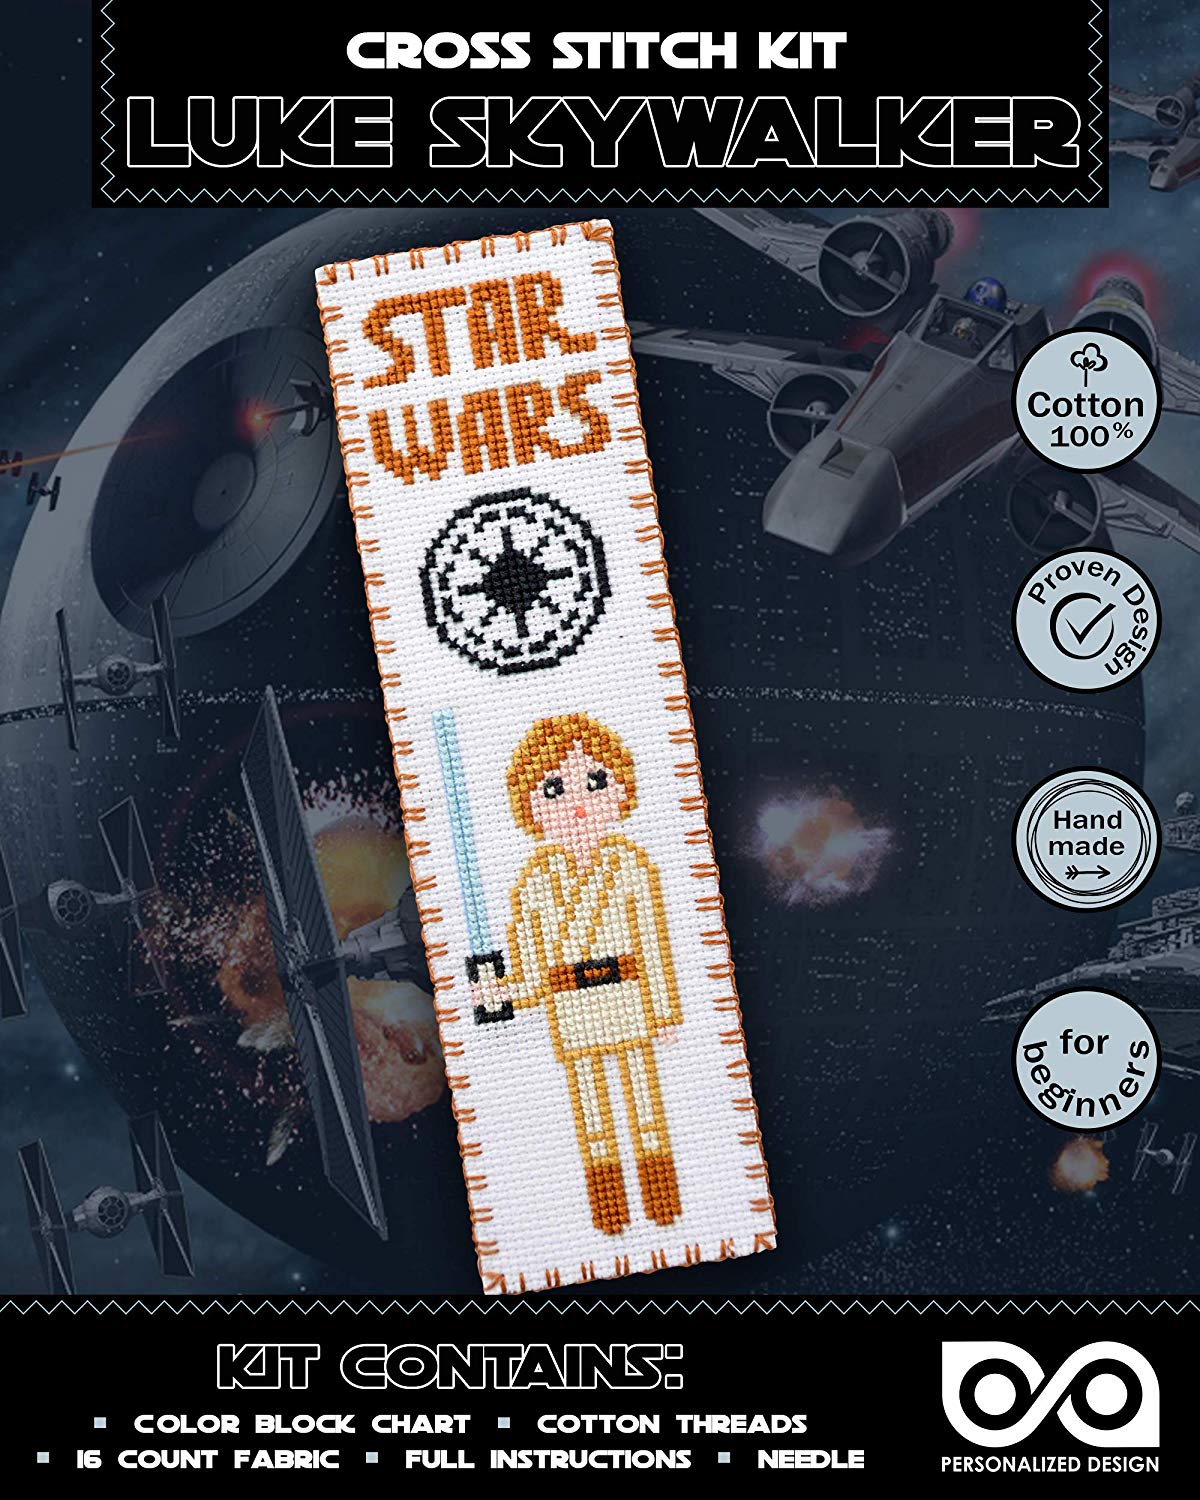 Cross Stitch Kits 'Star Wars' Luke Skywalker